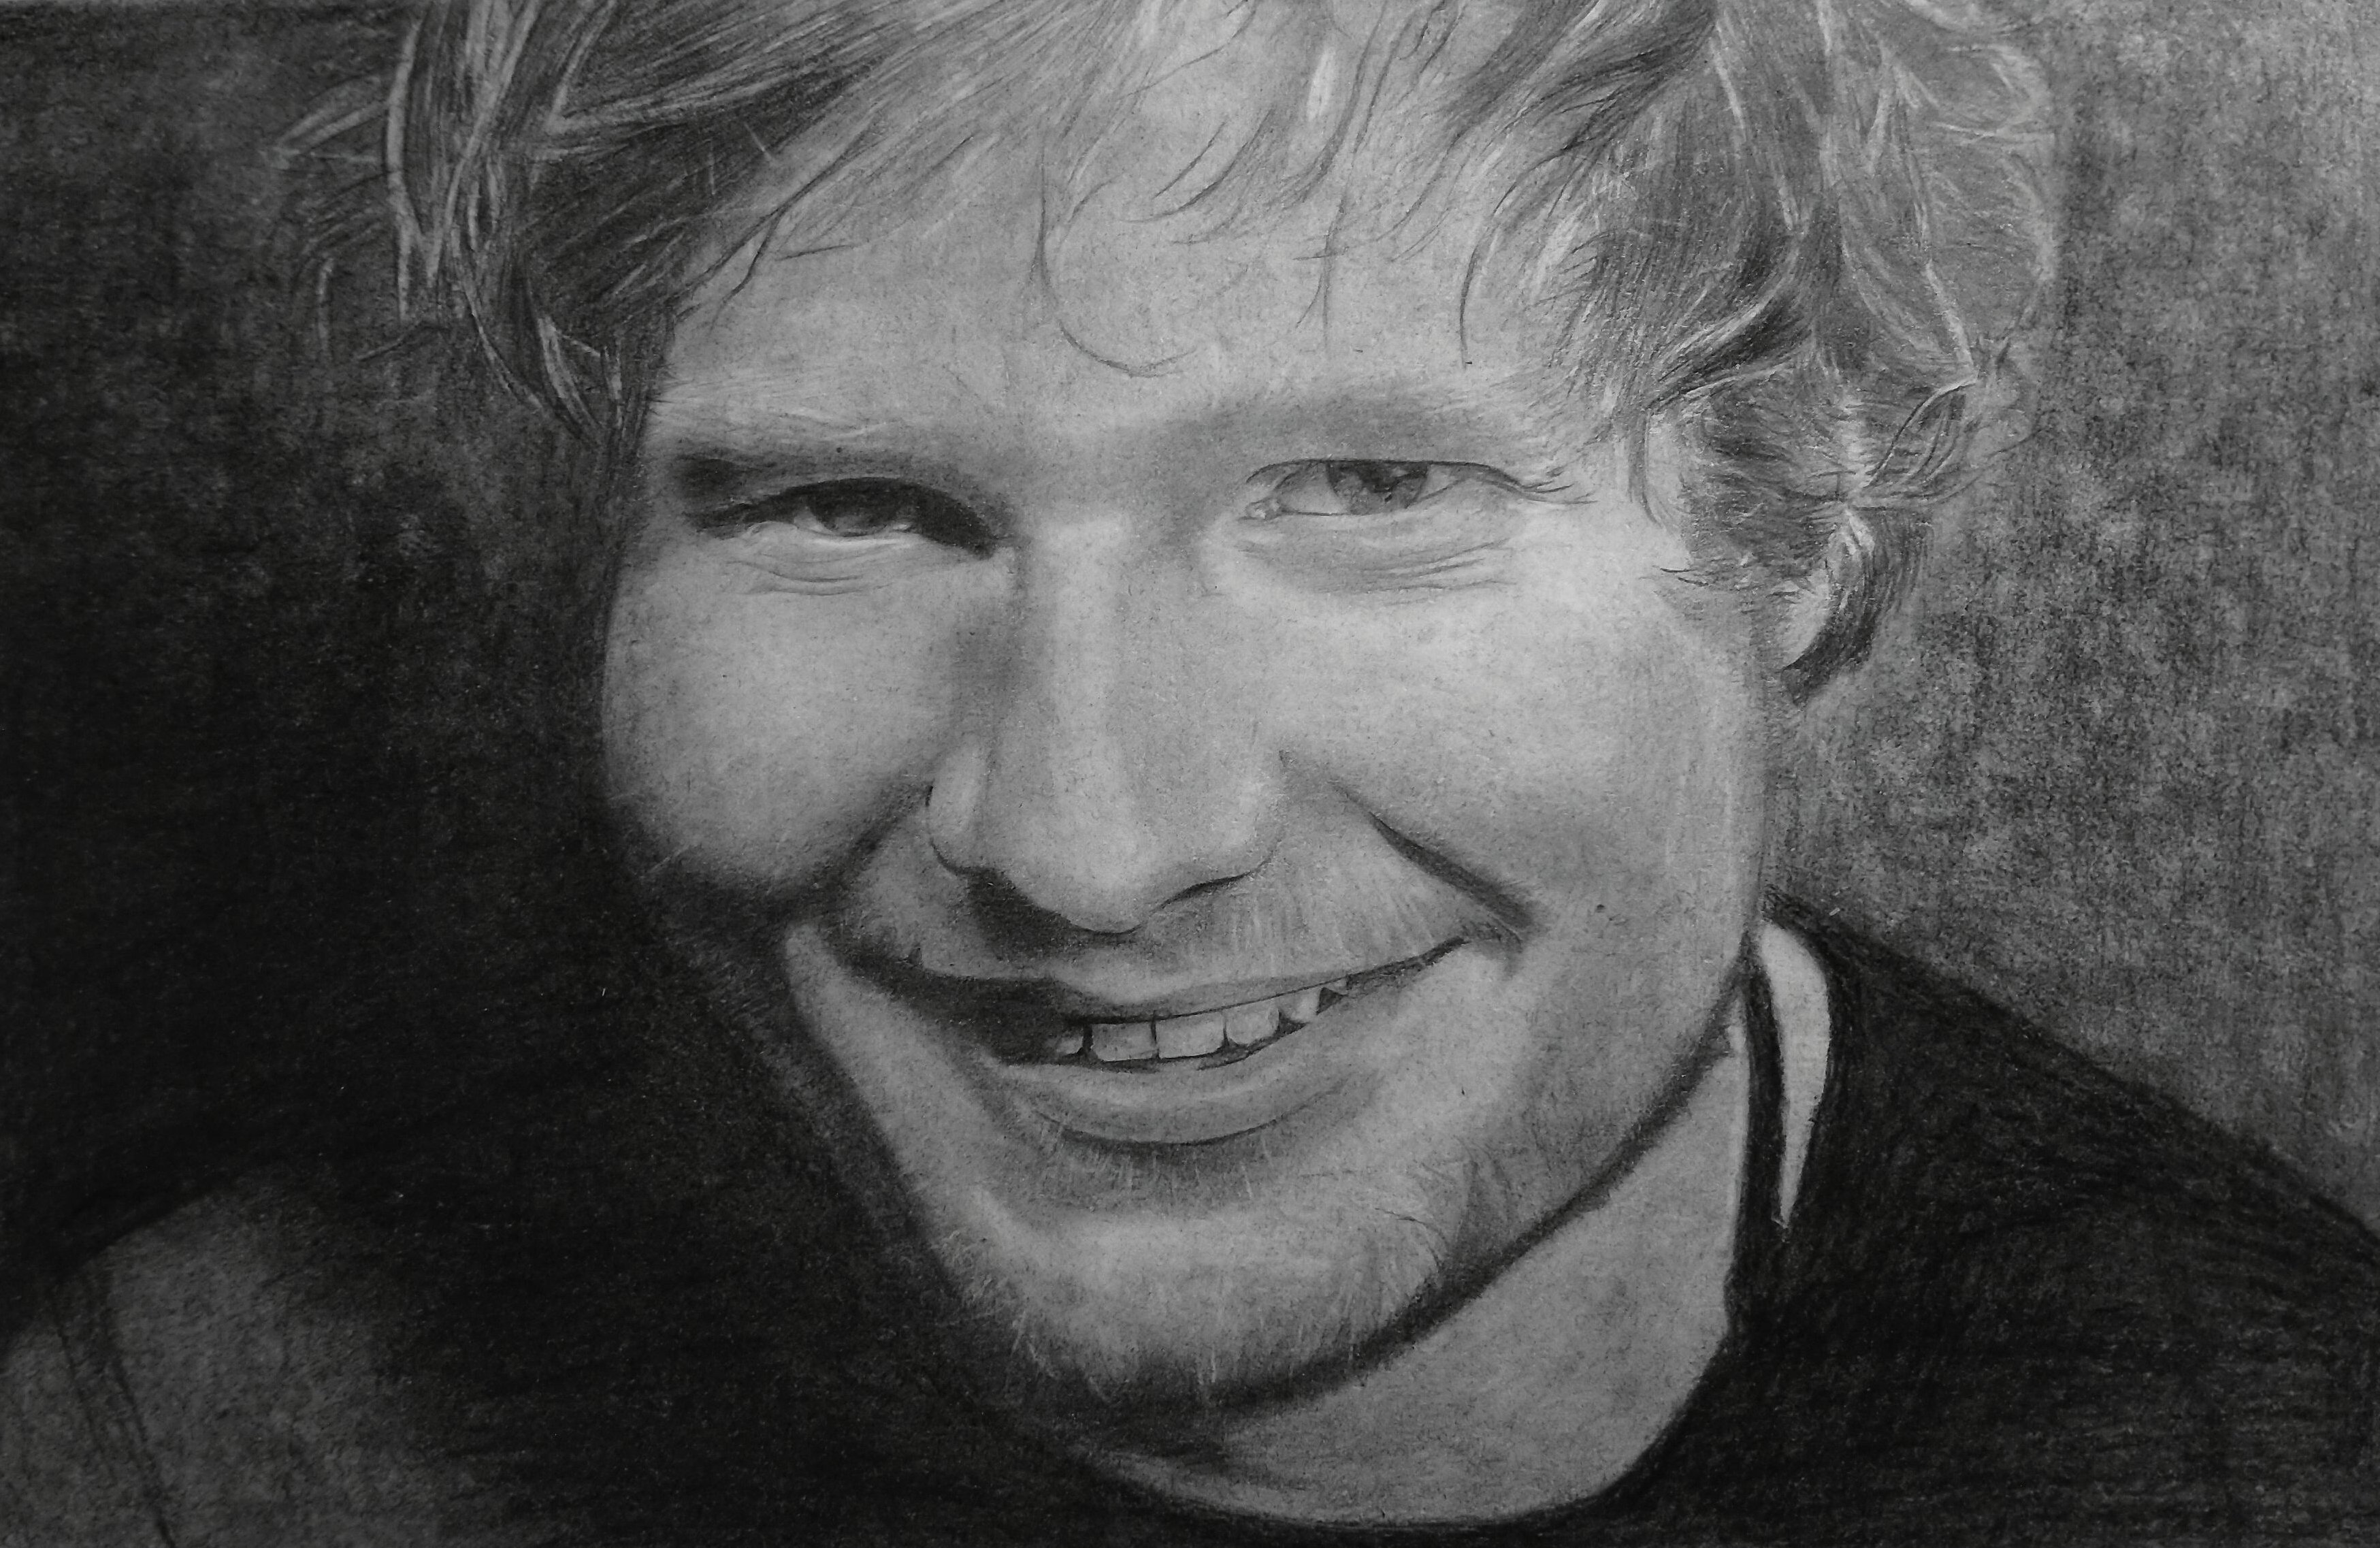 Ed Sheeran Pencil Drawing